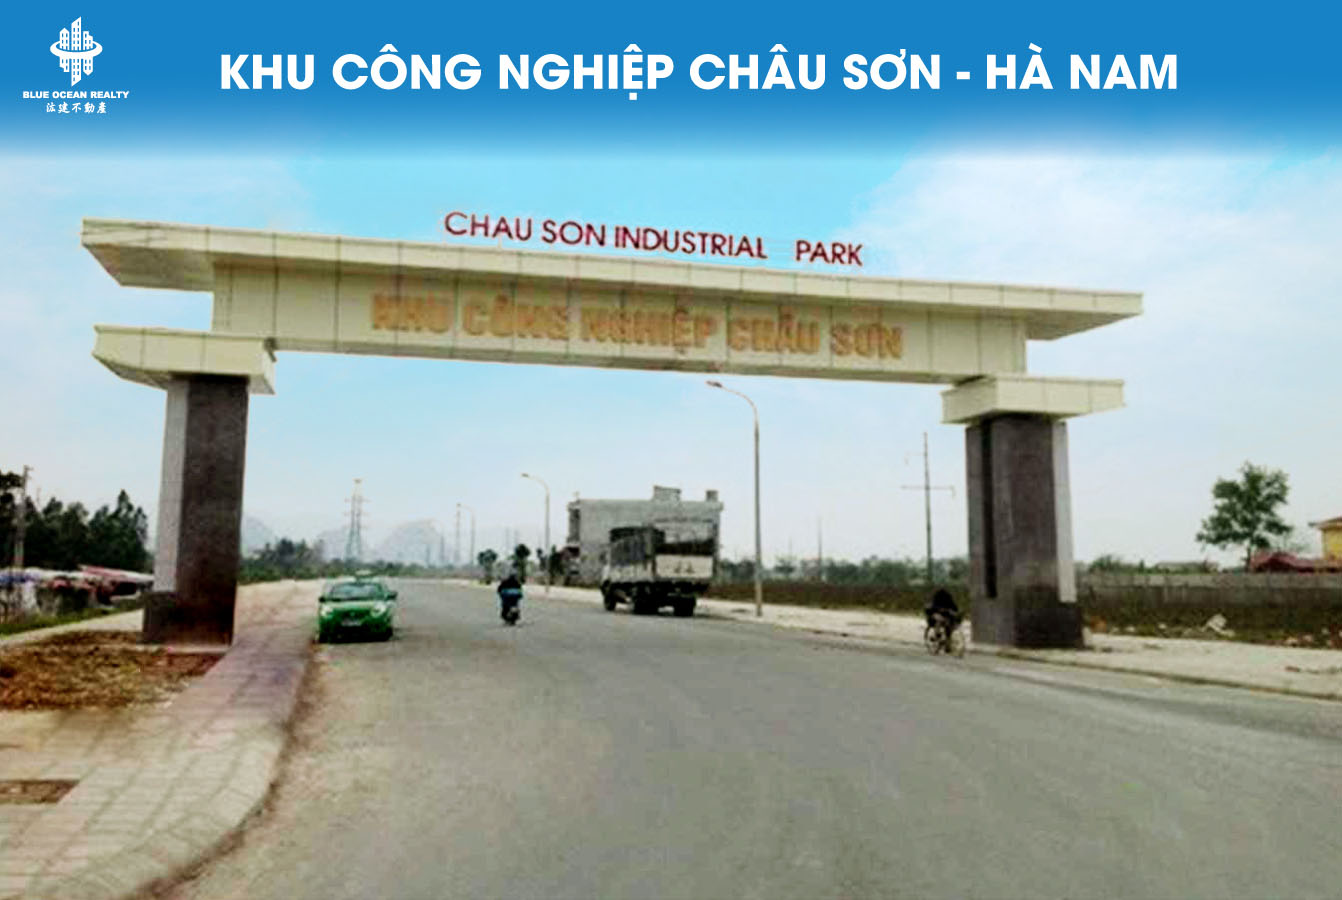 Khu công nghiệp (KCN) Châu Sơn tỉnh Hà Nam